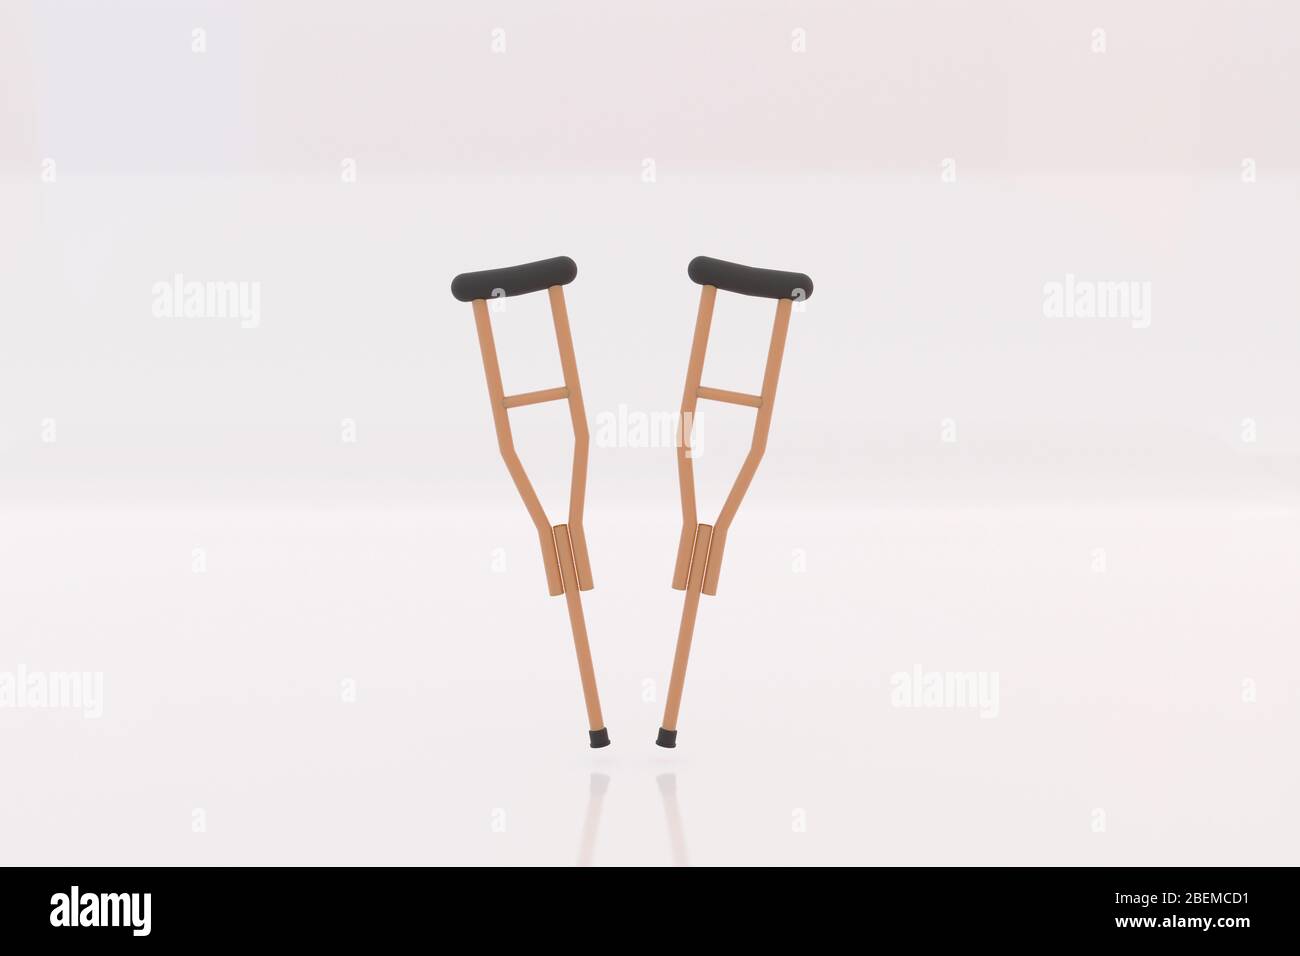 Crutches chair immagini e fotografie stock ad alta risoluzione - Alamy